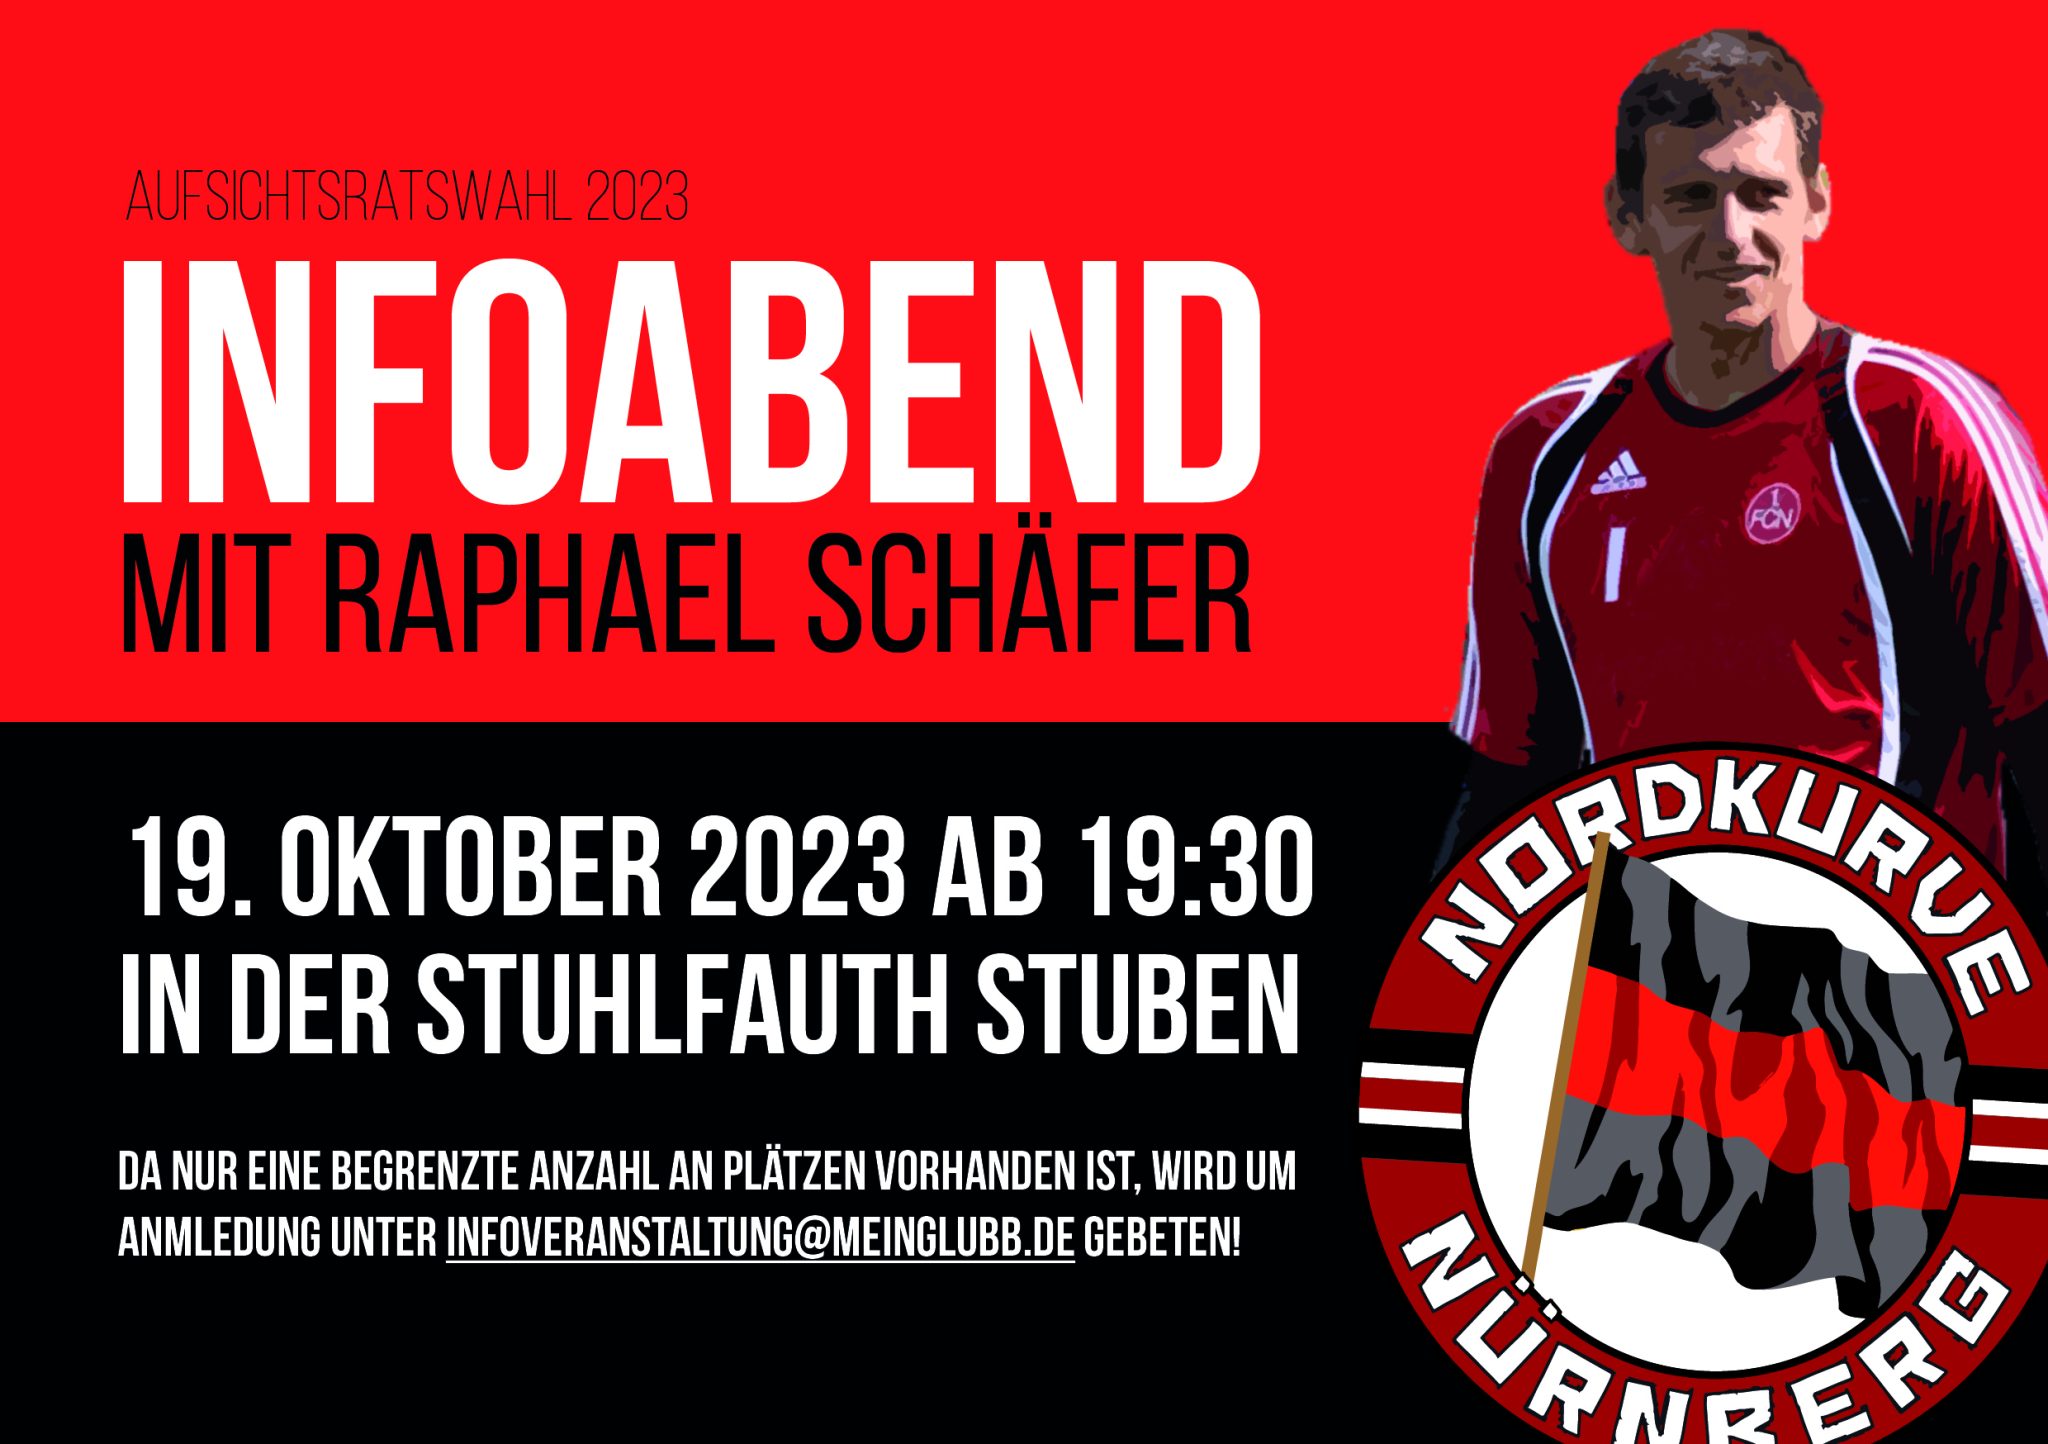 Aufsichtsratswahl 2023 – Infoabend mit Raphael Schäfer